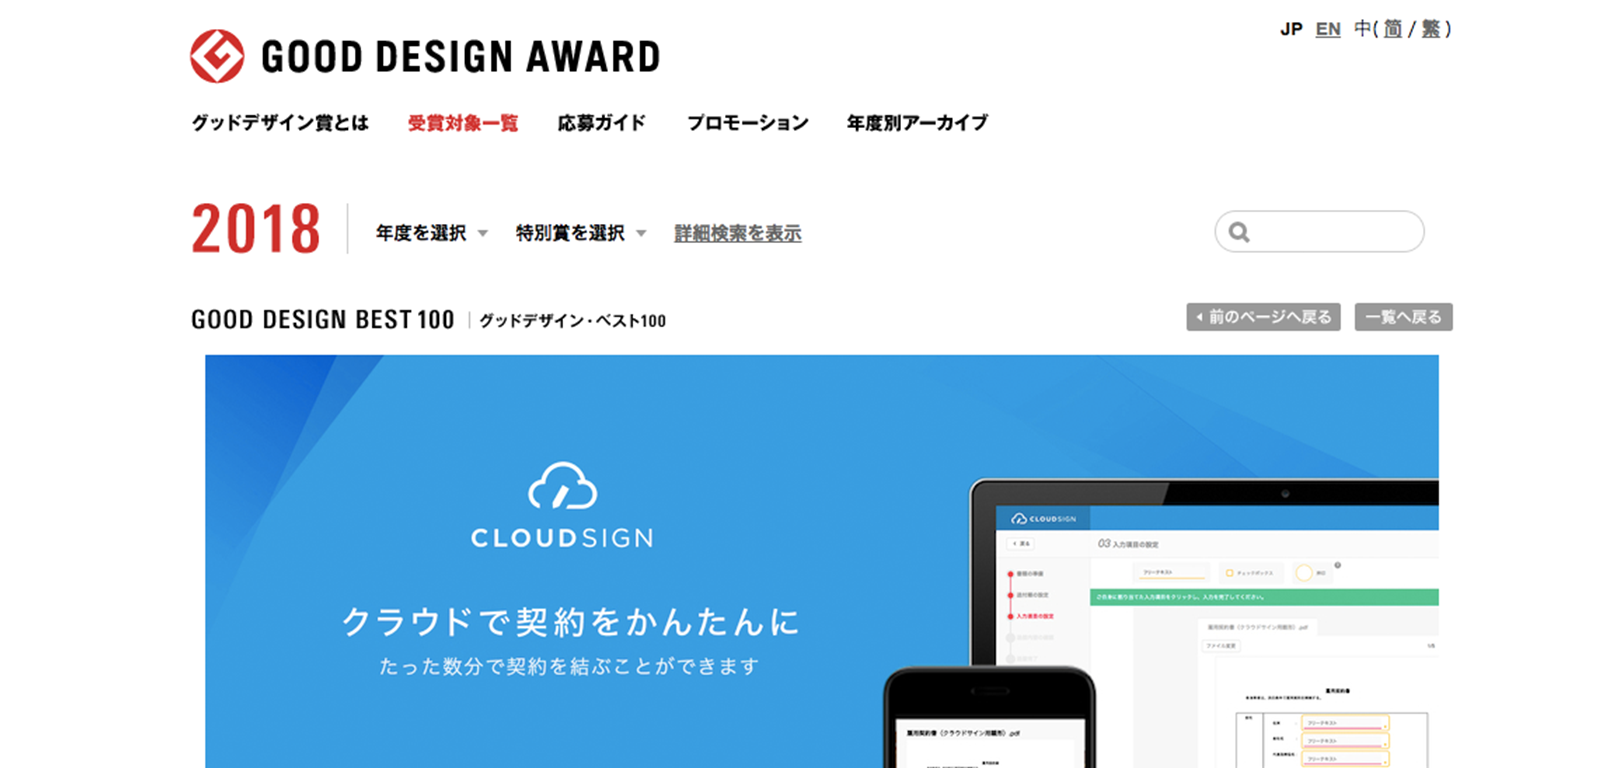 クラウドサインがグッドデザイン賞「GOOD DESIGN BEST 100」を受賞